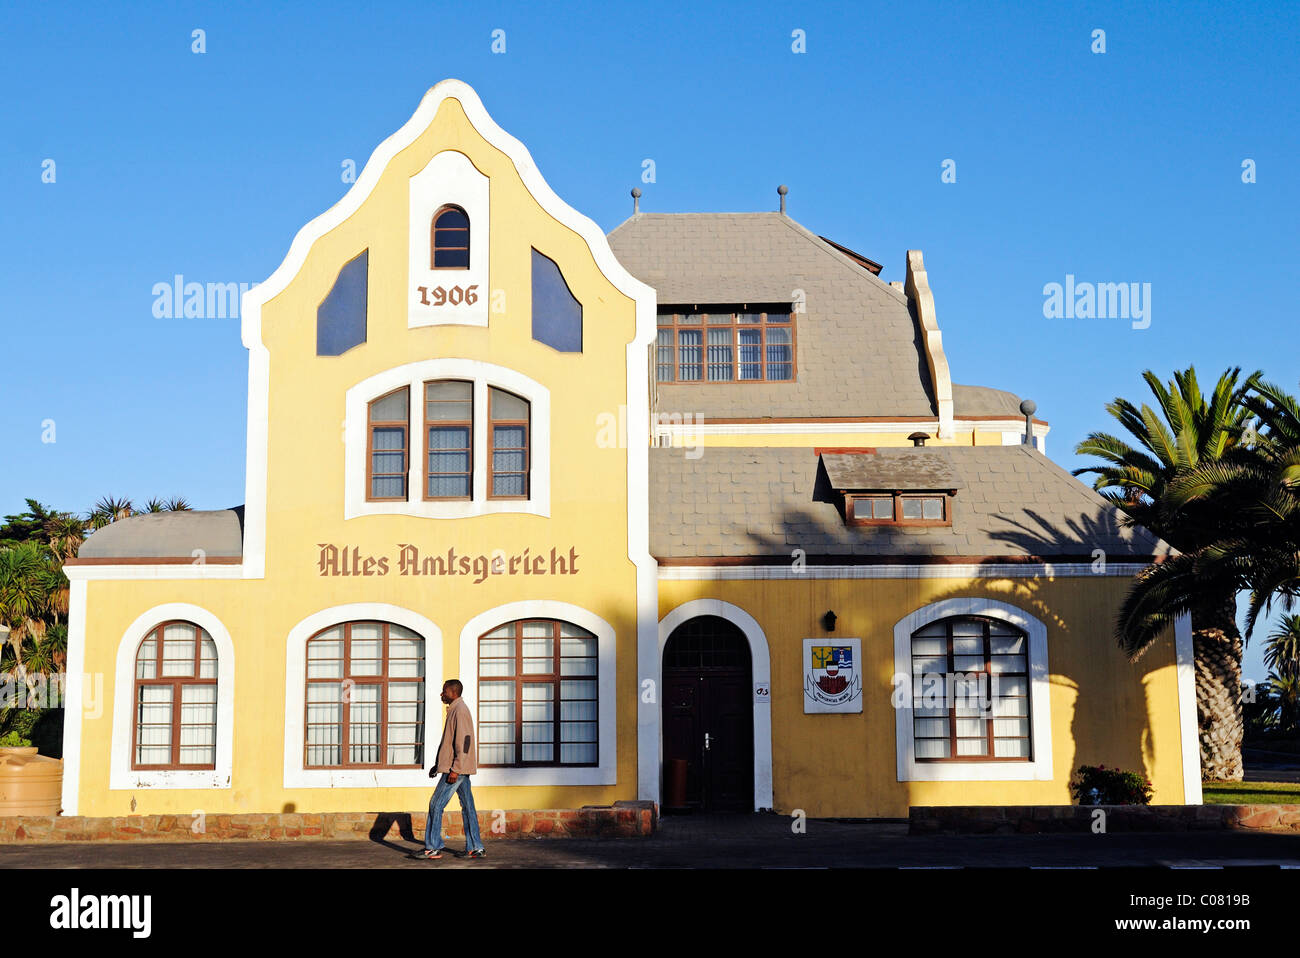 Altes Amtsgericht Bau, Architektur, gebaut während der deutschen Kolonialzeit, Swakopmund, Namibia, Afrika Stockfoto